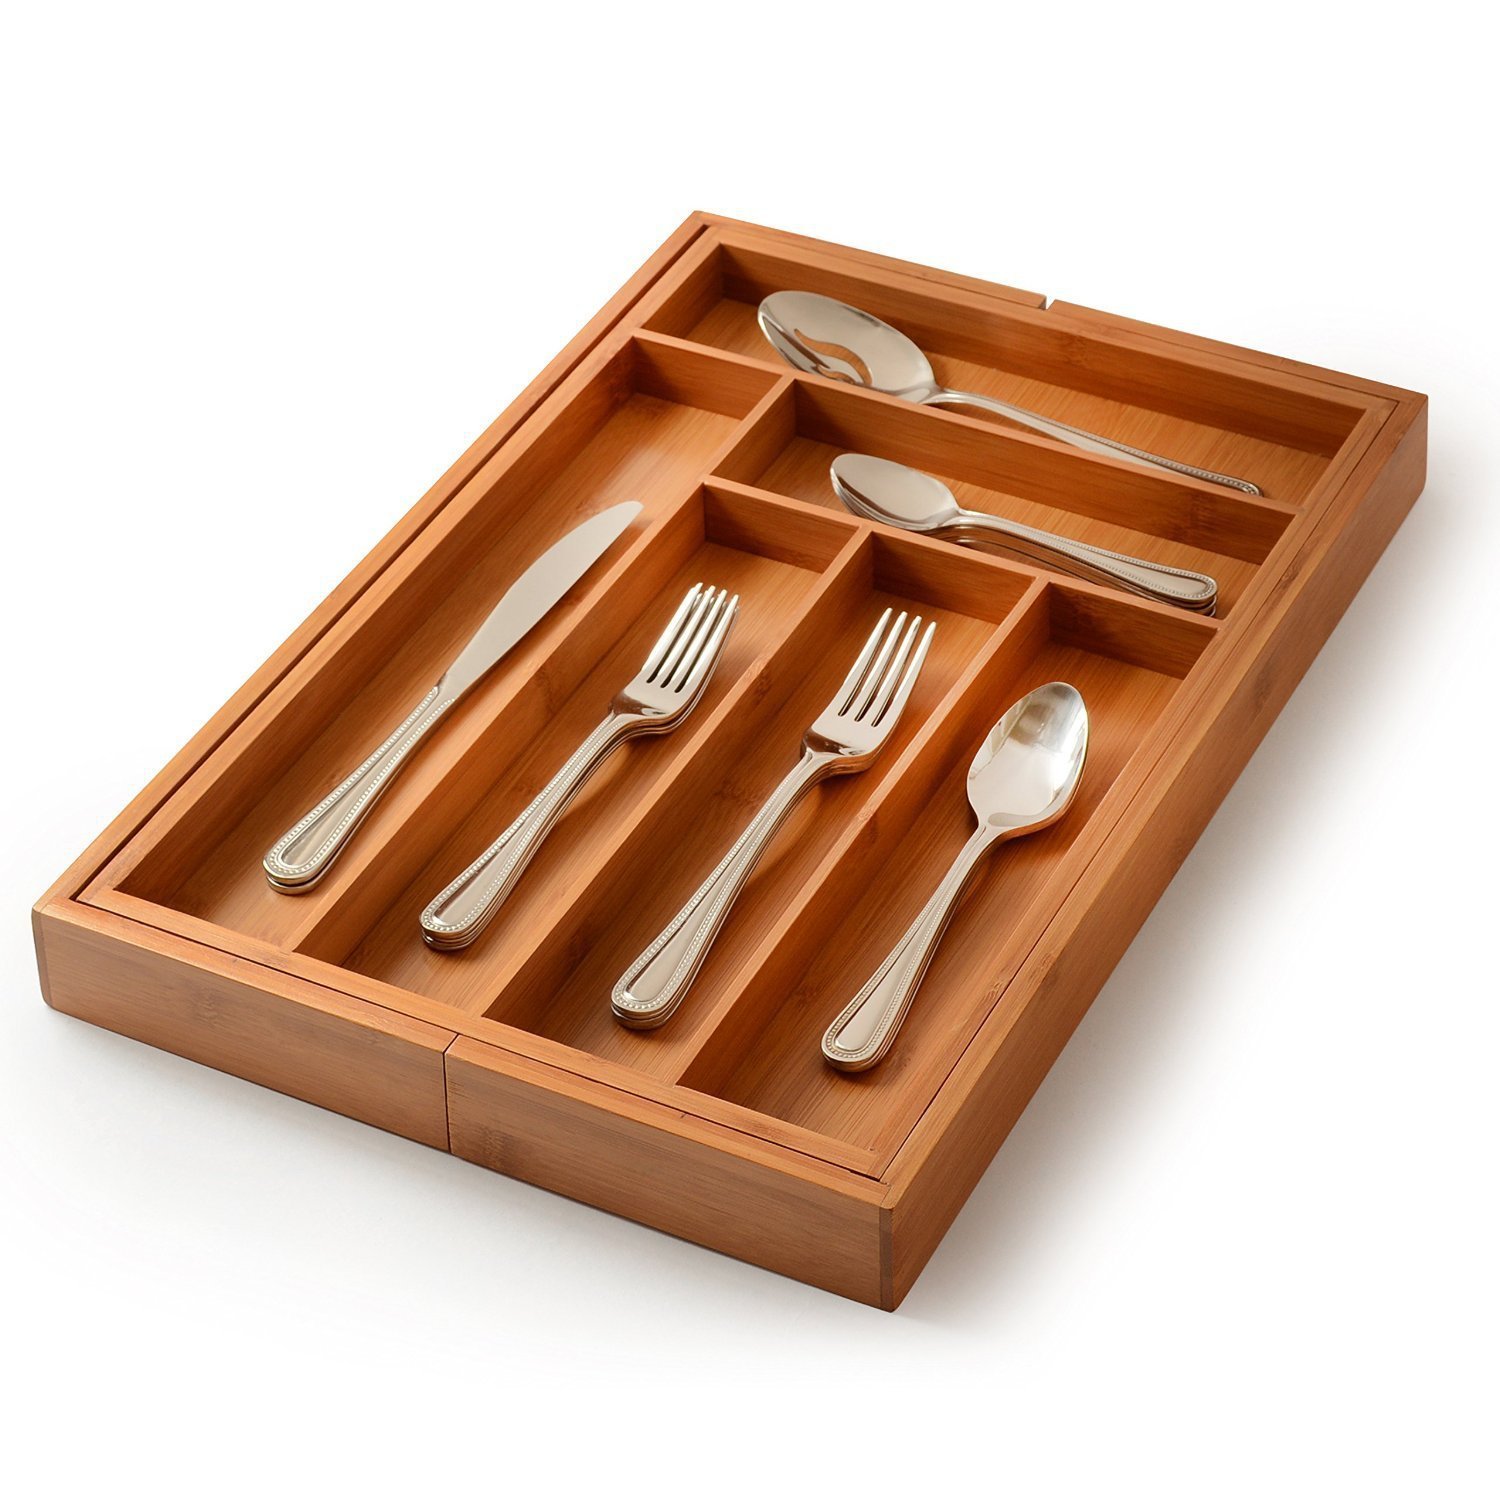 

8 Сетка Бамбуковый кухонный ящик Органайзер Контейнер для хранения столового серебра Коробка и лоток для столовых прибор